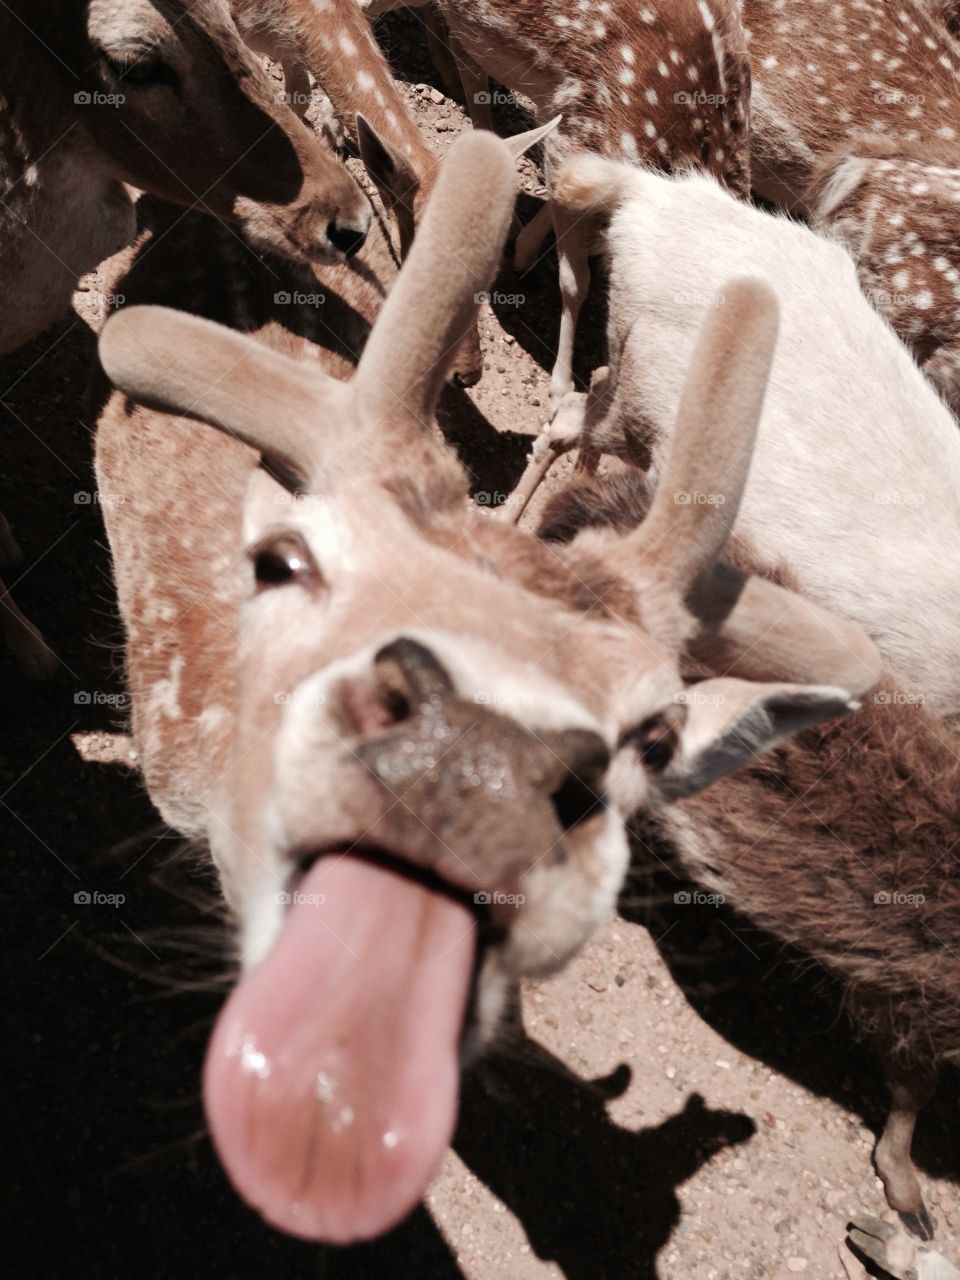 Deer tongue